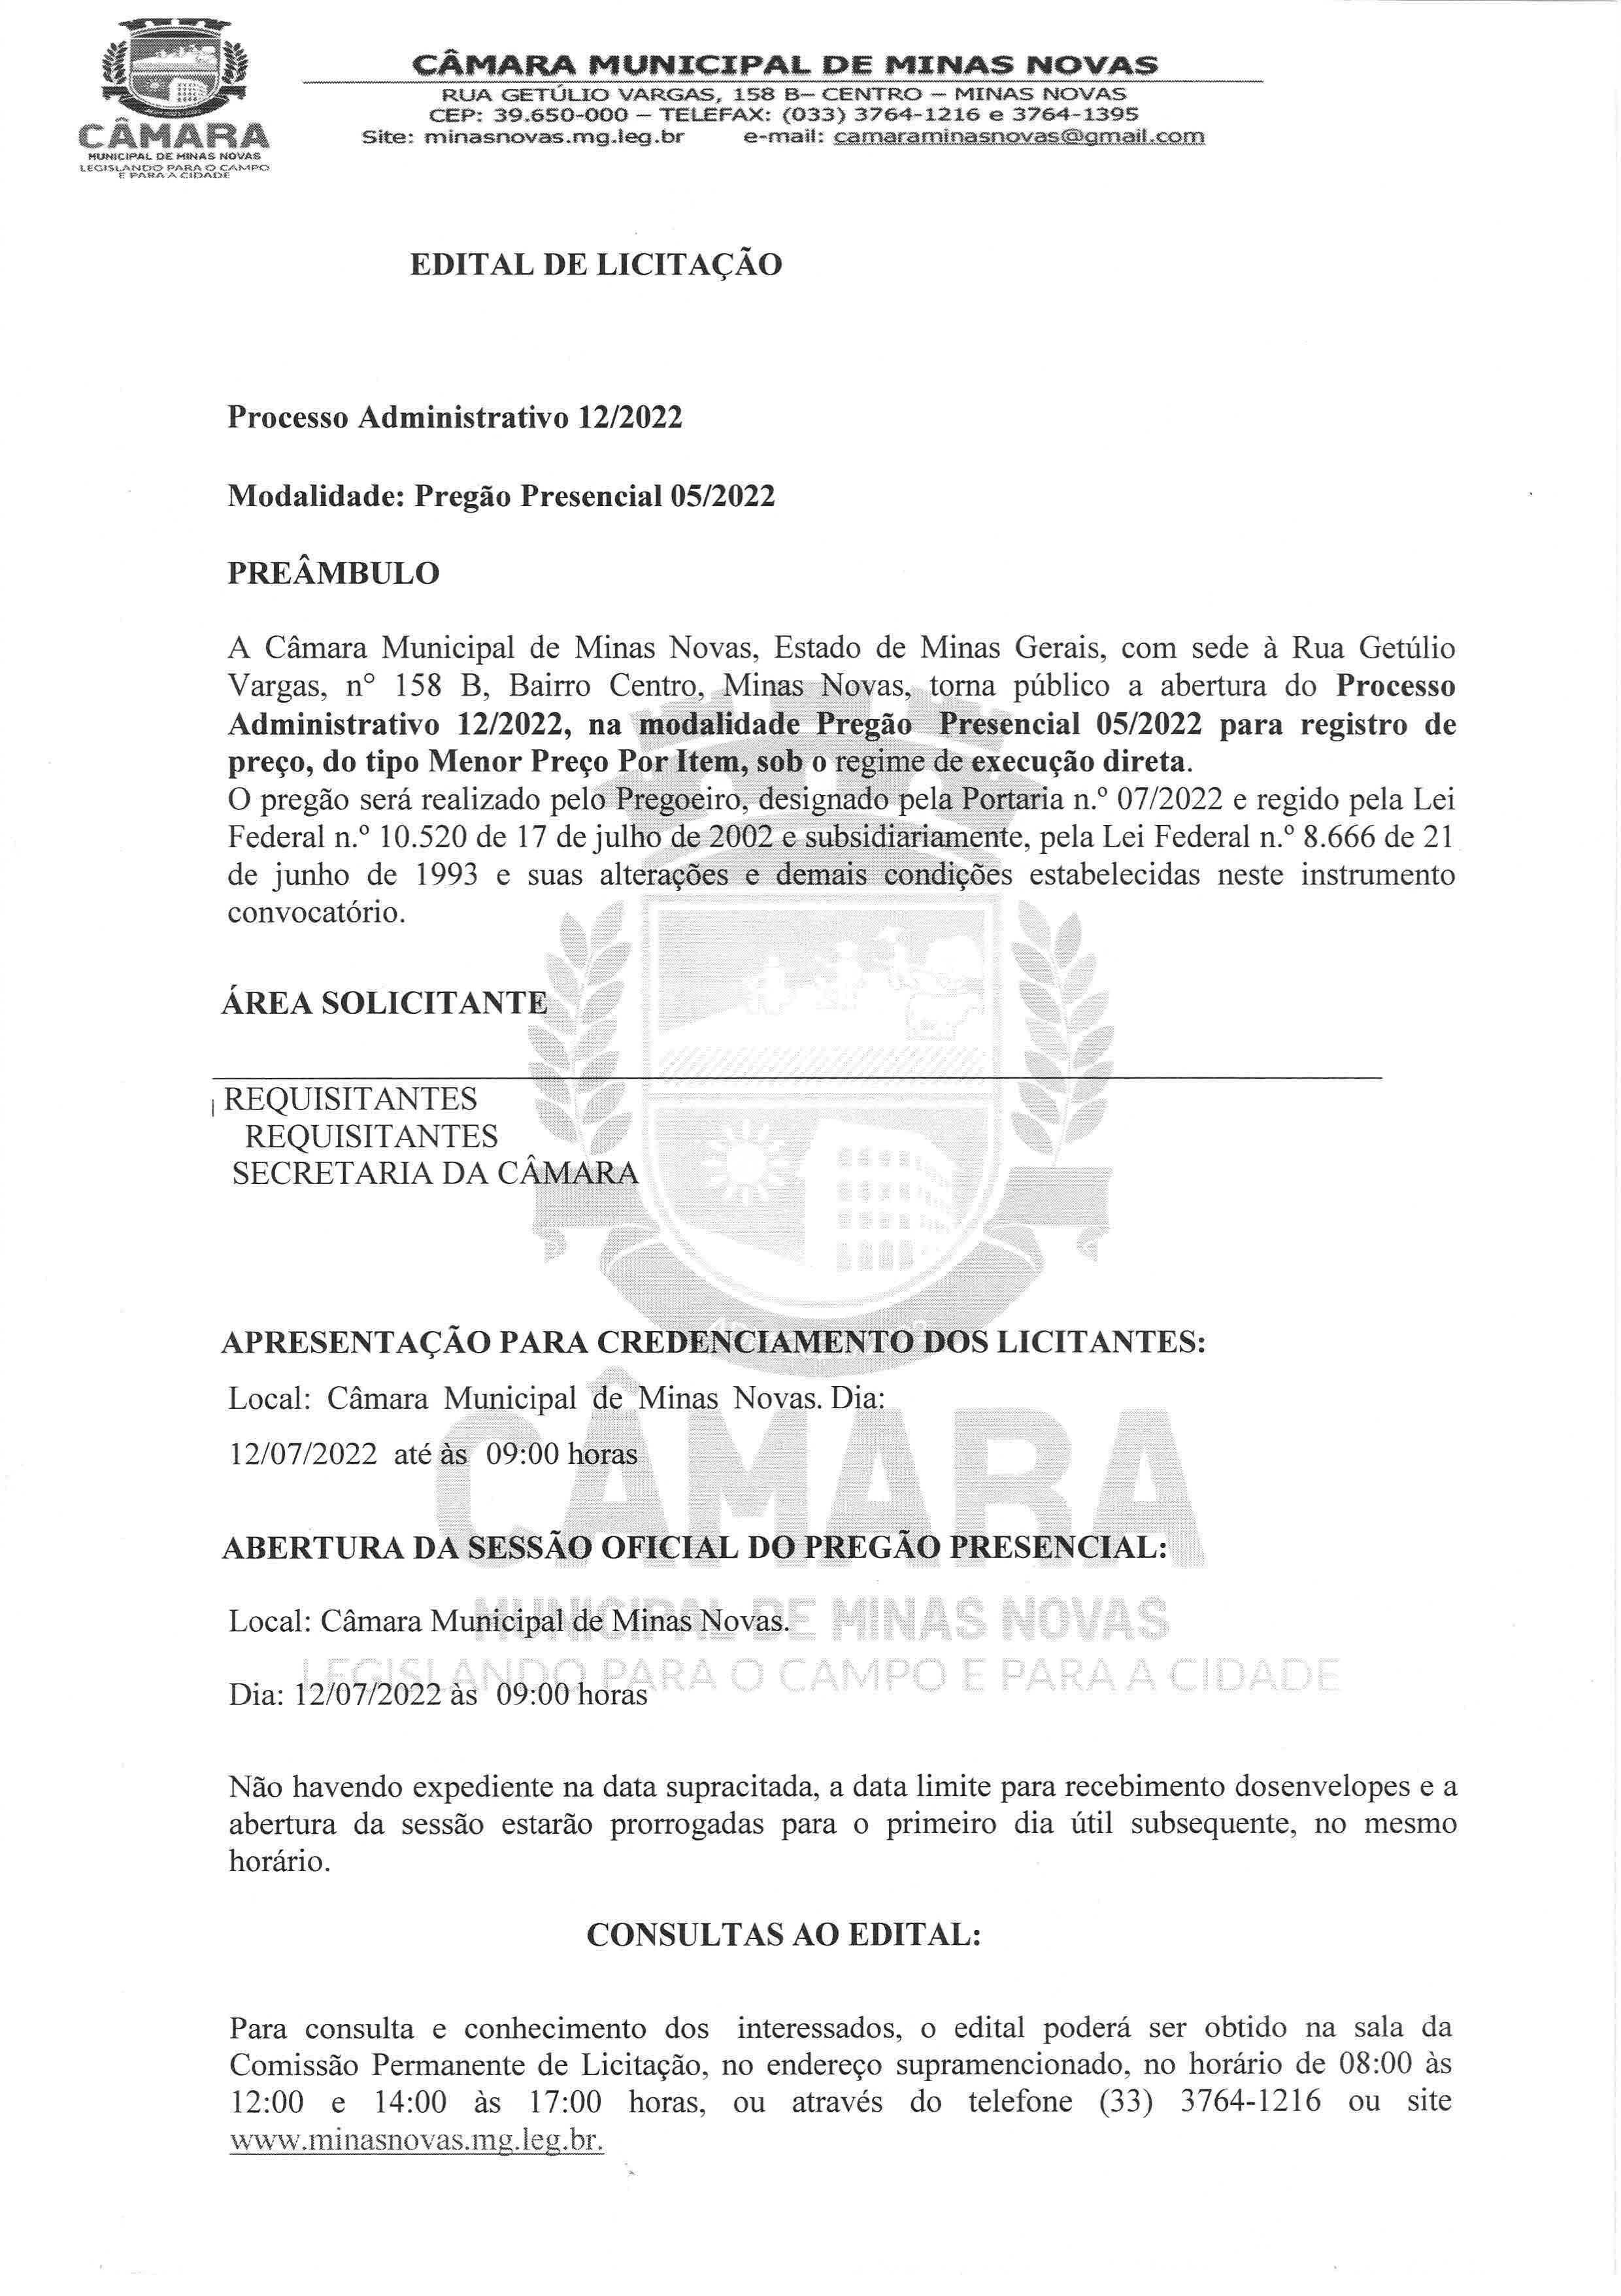 Edital de Licitação - Processo Administrativo nº 12/2022